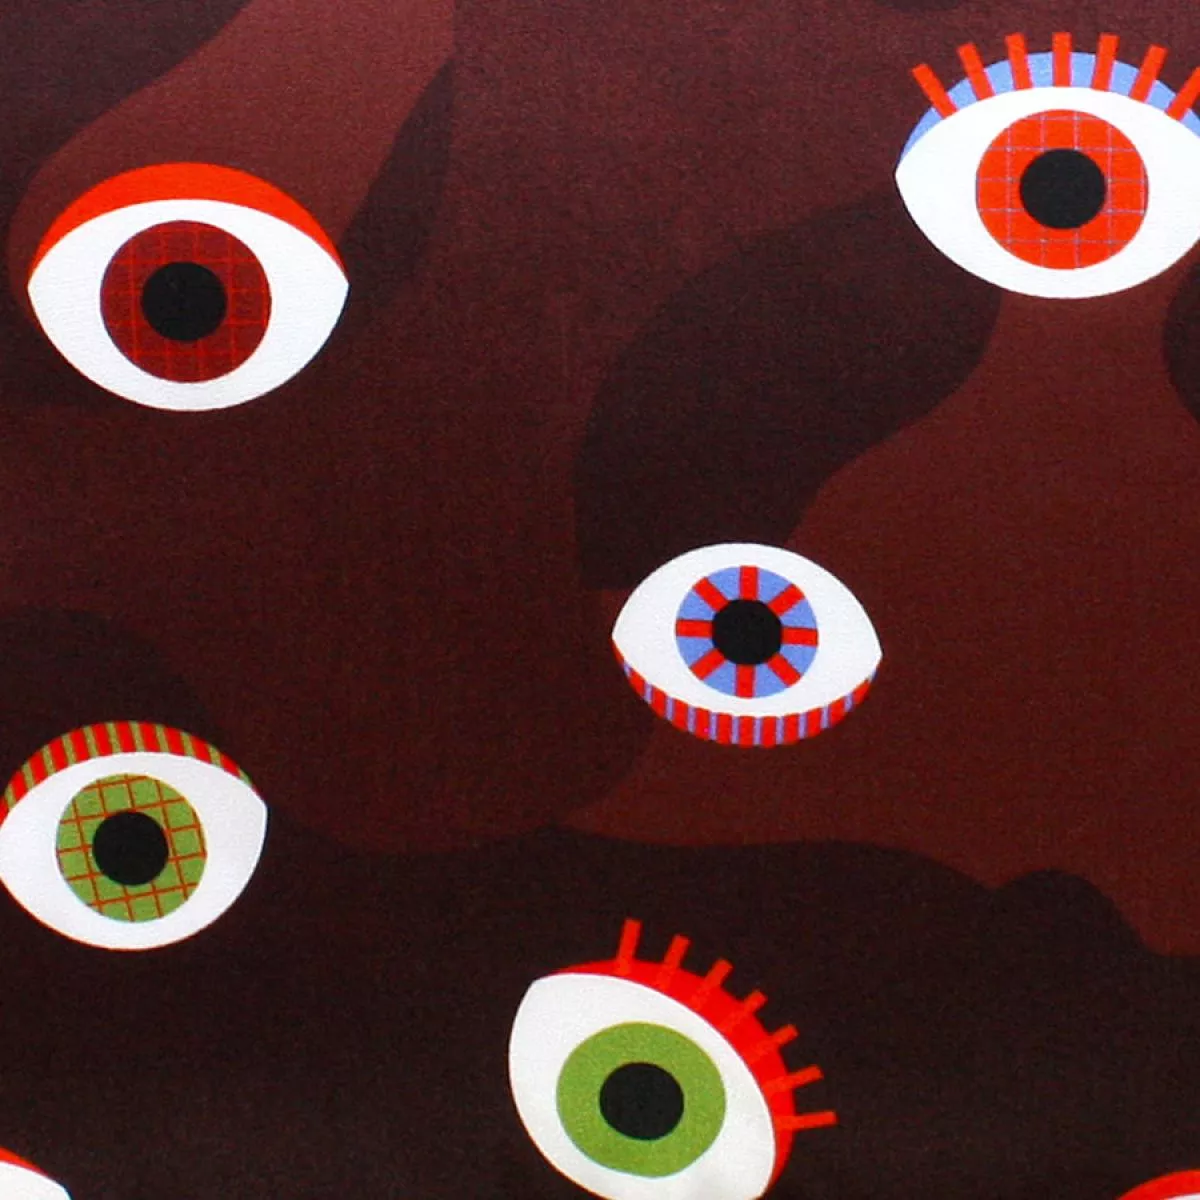 Handgenähtes Sofakissen mit Augen-Motiv als Druck auf Seide (42 x 42 cm)